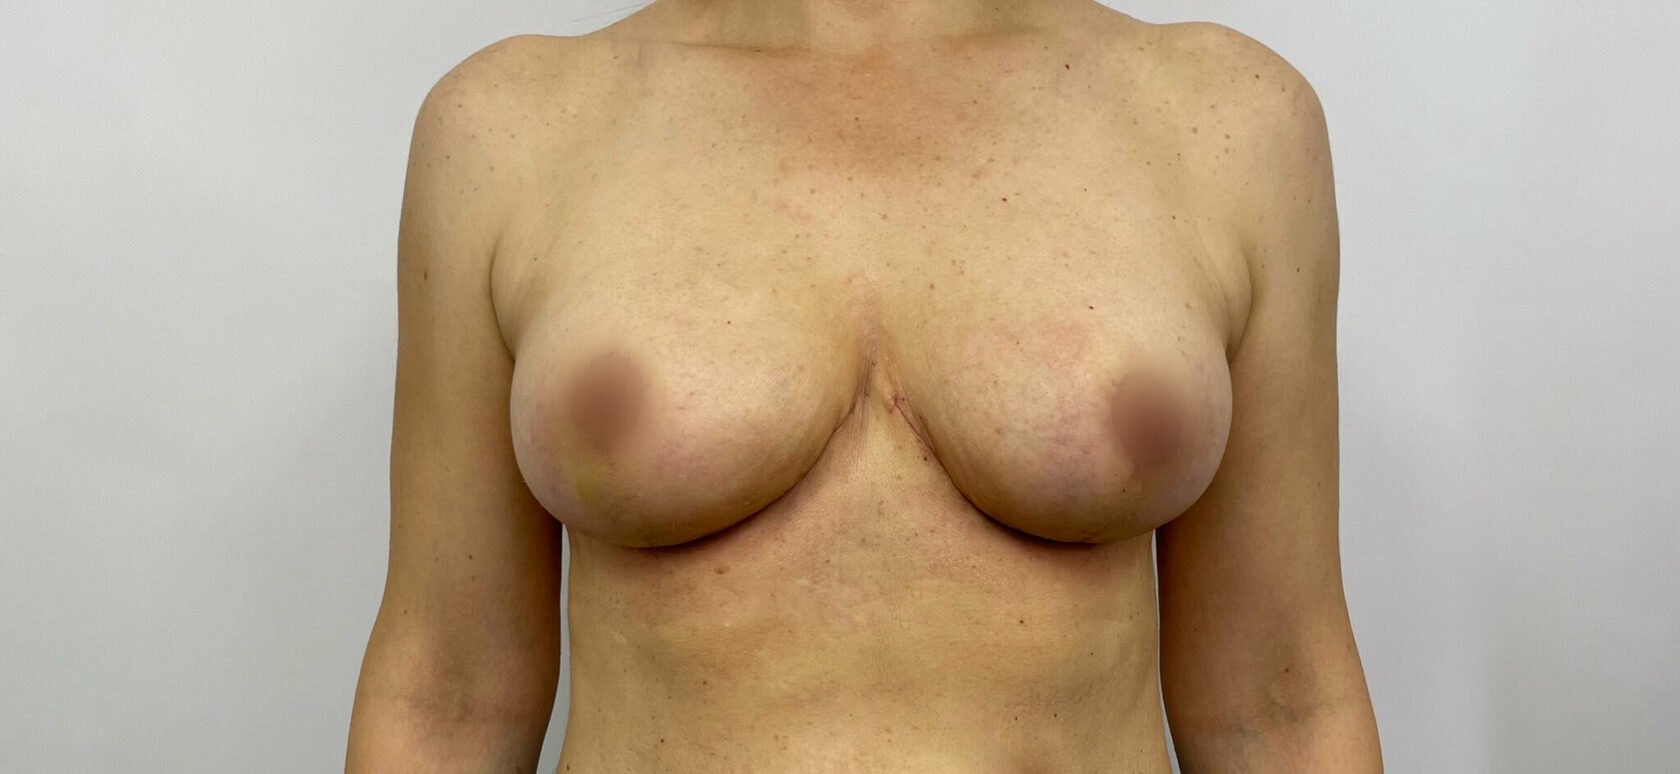 может ли при мастопатии увеличиться только одна грудь фото 32